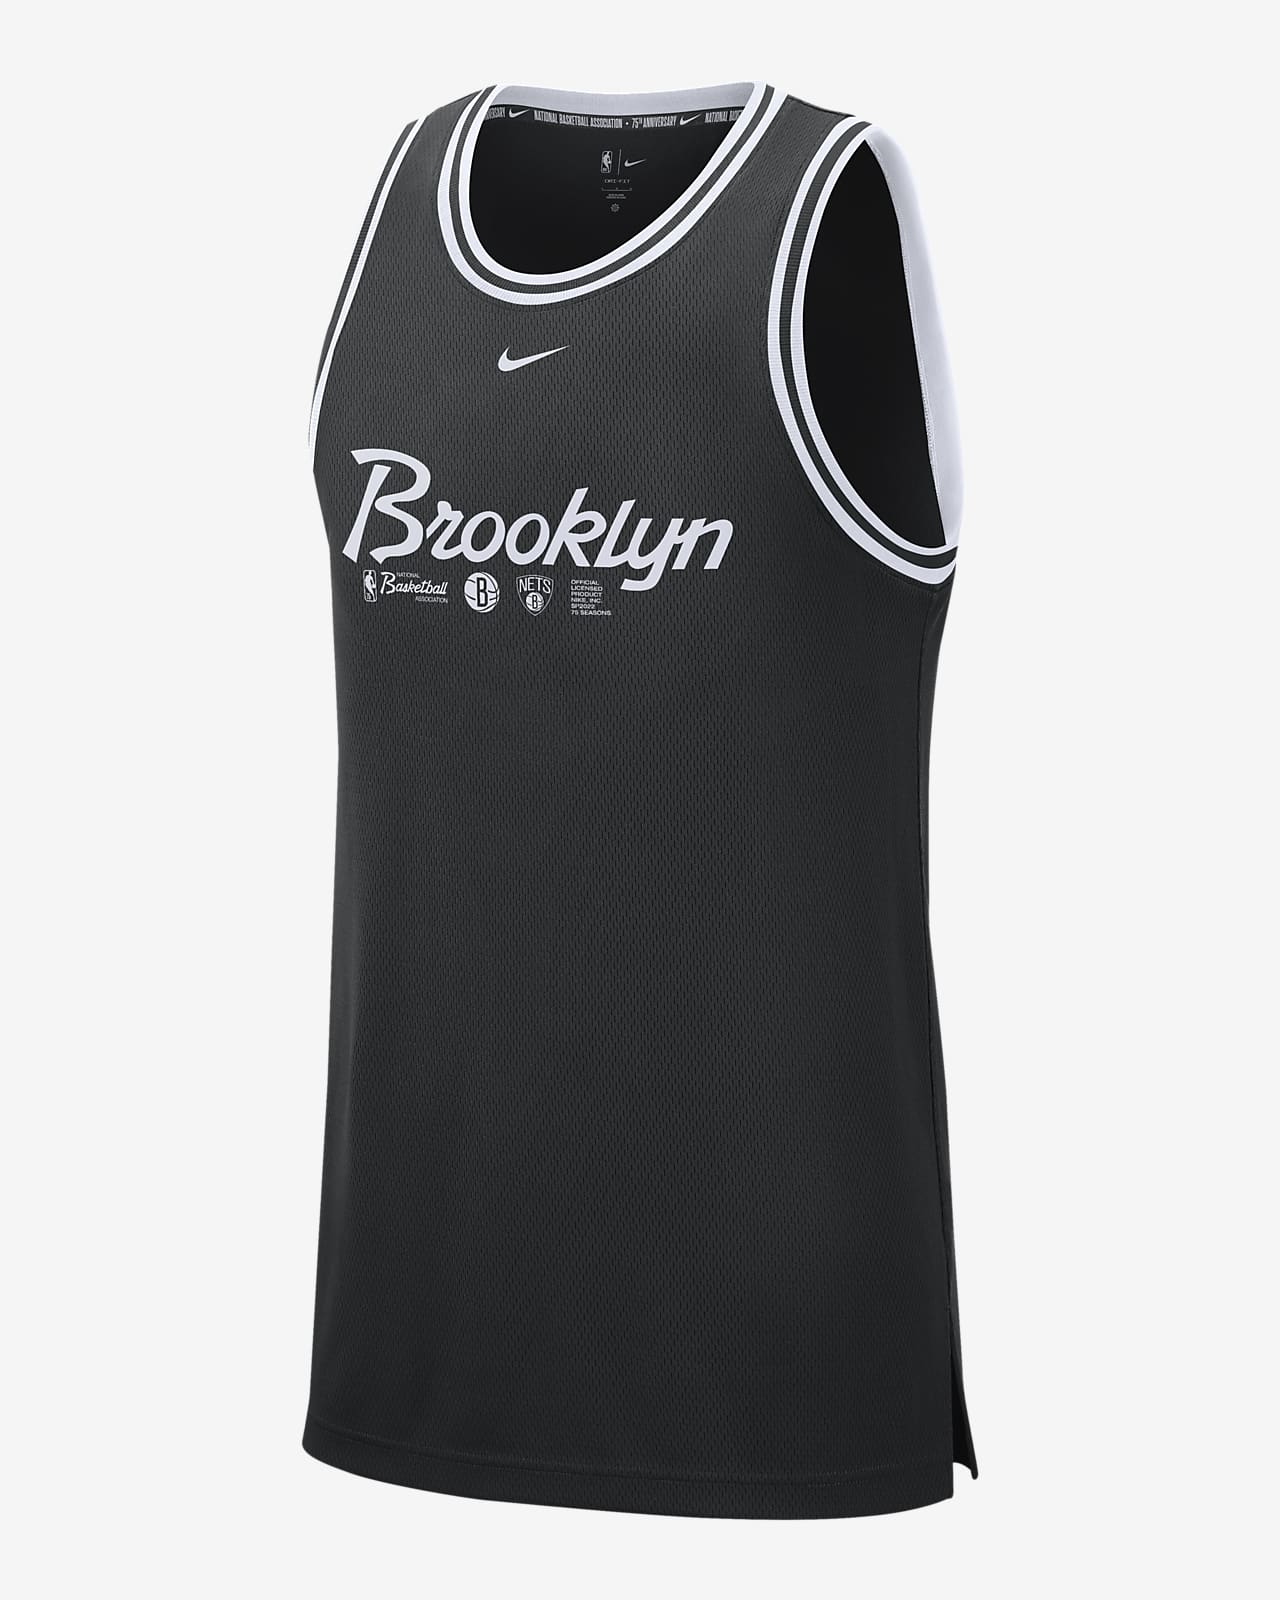 Brooklyn Nets DNA Nike Dri-FIT NBA-s trikó férfiaknak